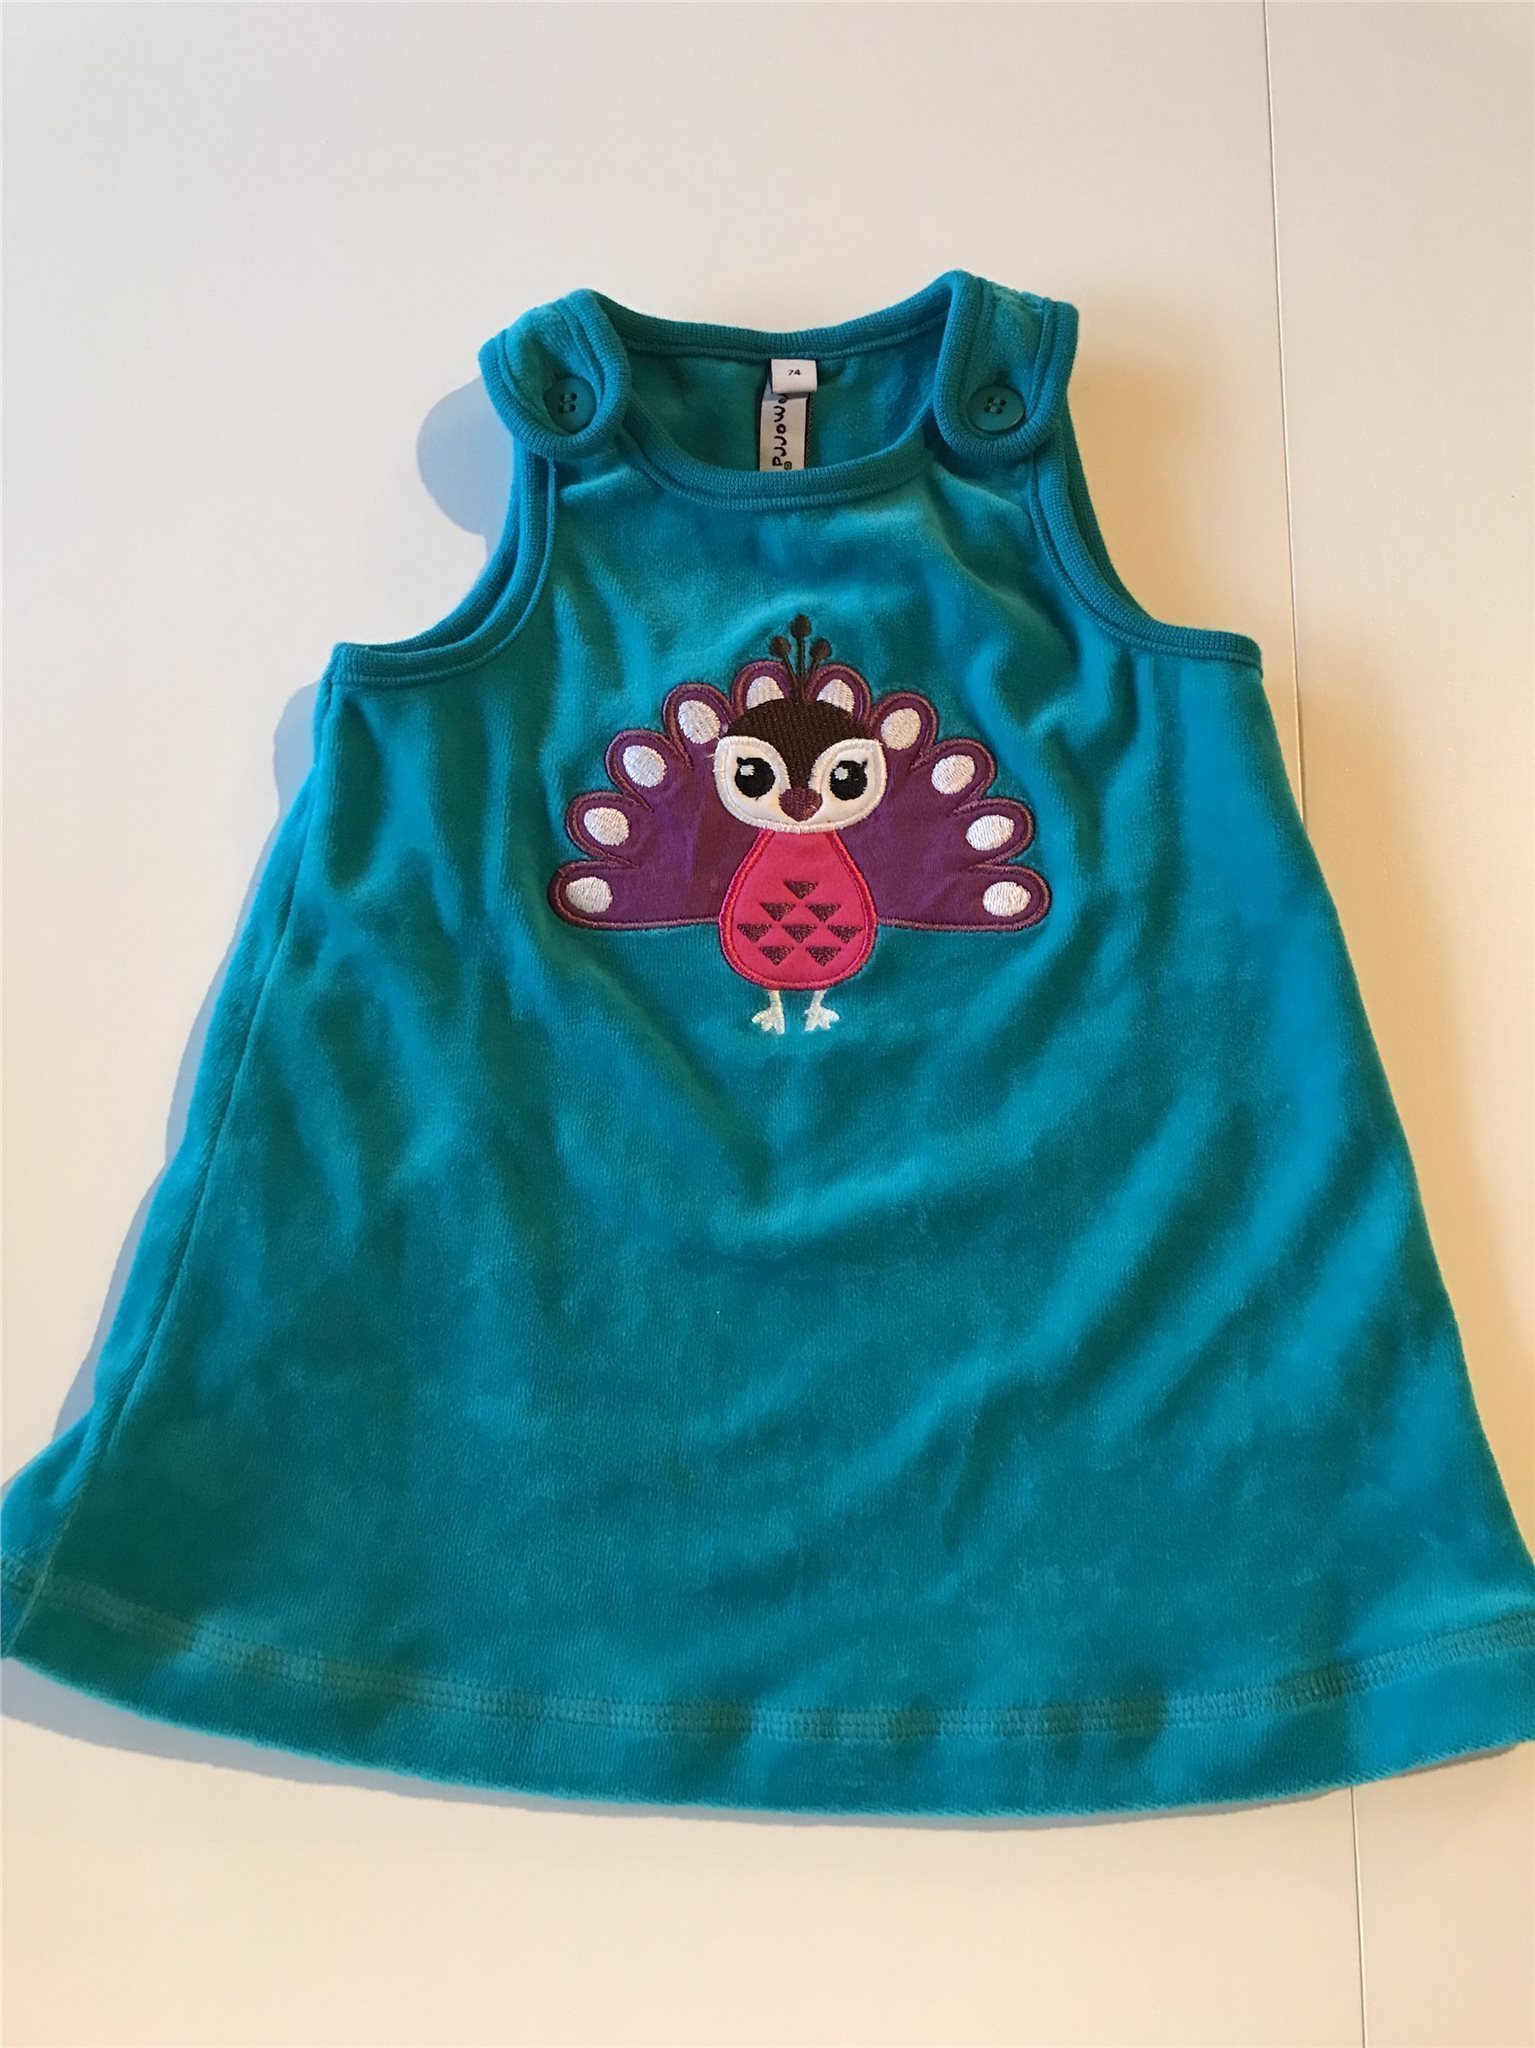 Onlineshop für Kinderkleider und nützlichem für den Alltag ...